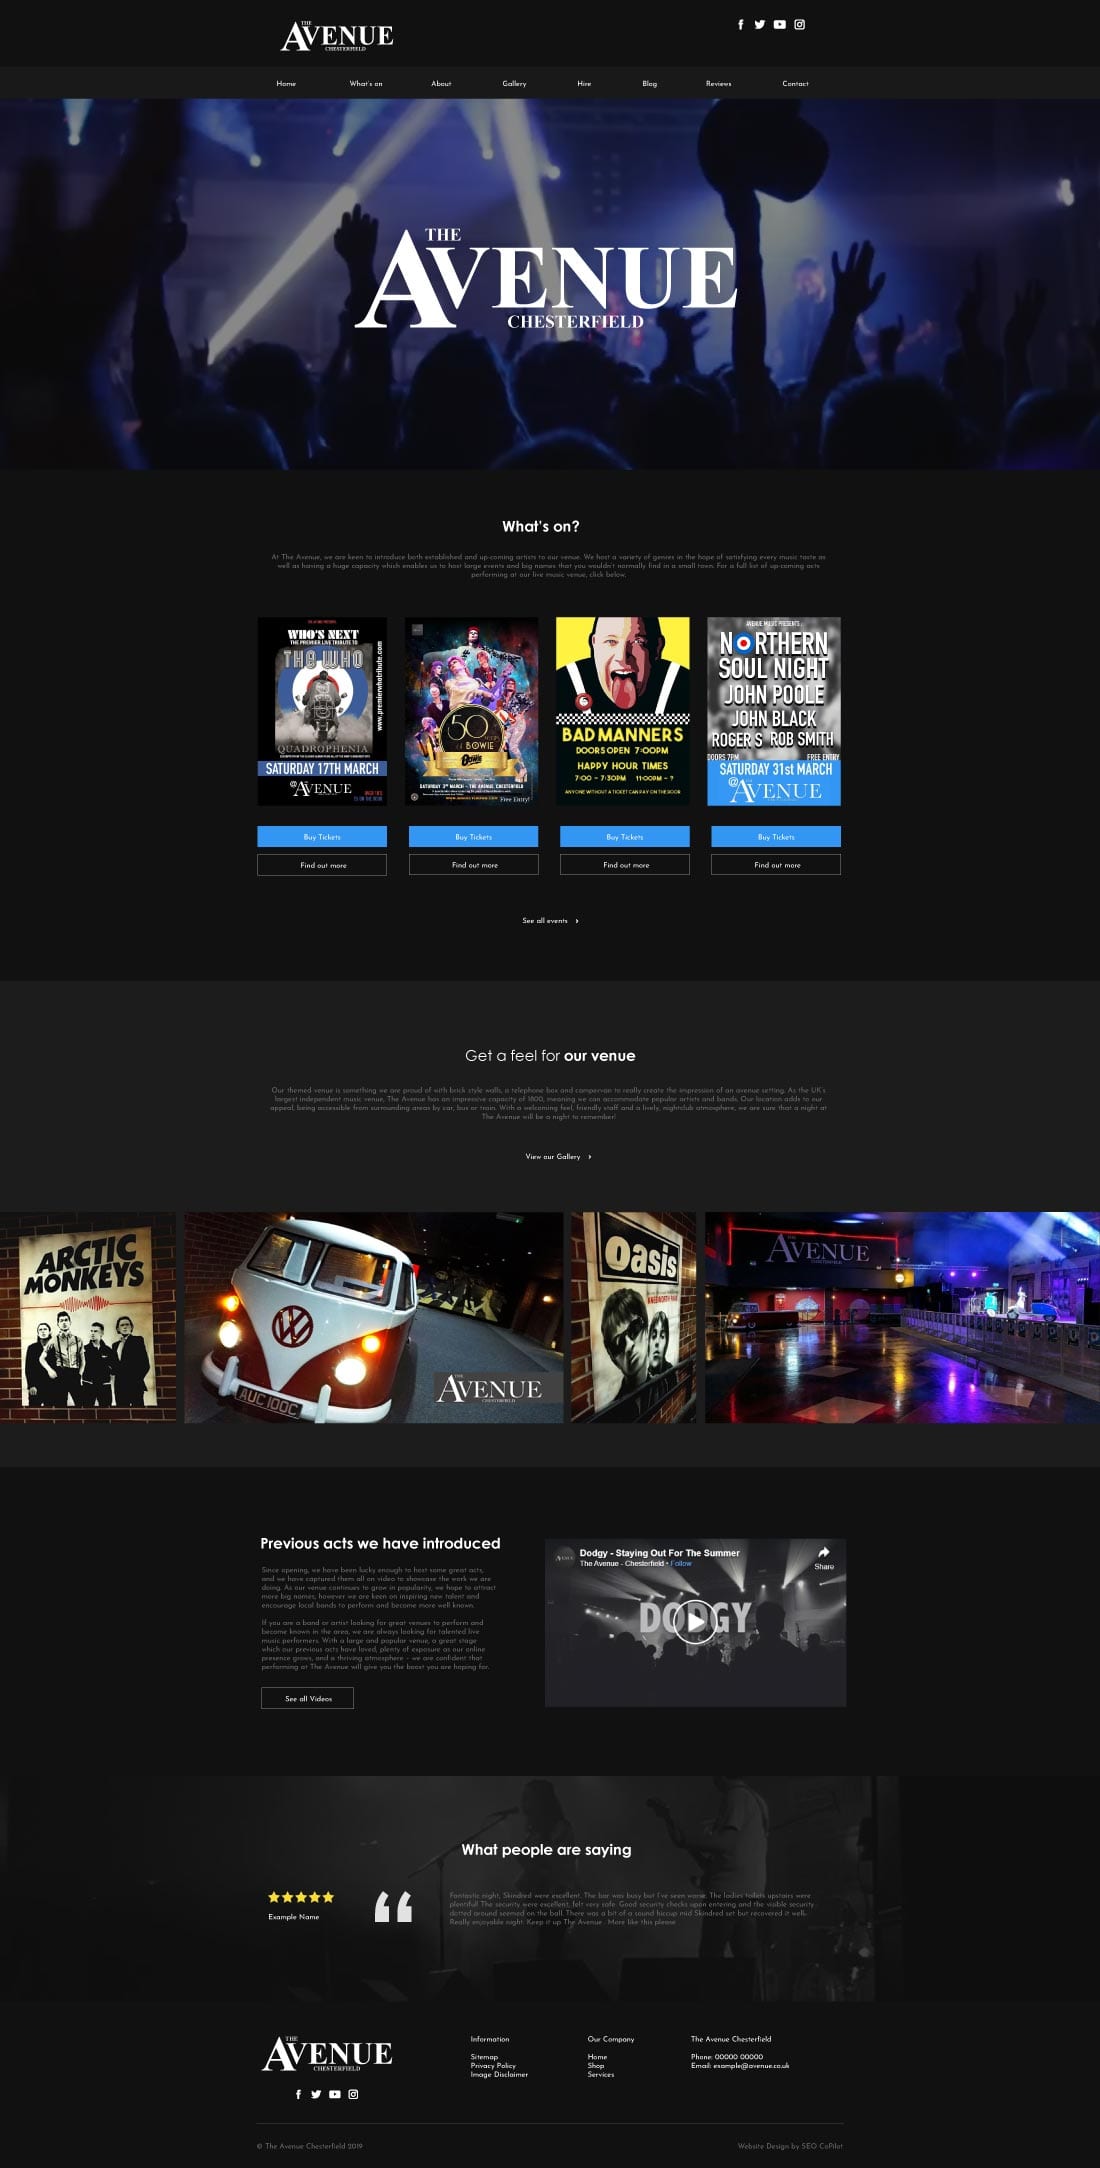 Avenue nightclub website designed by SEO CoPilot web designers